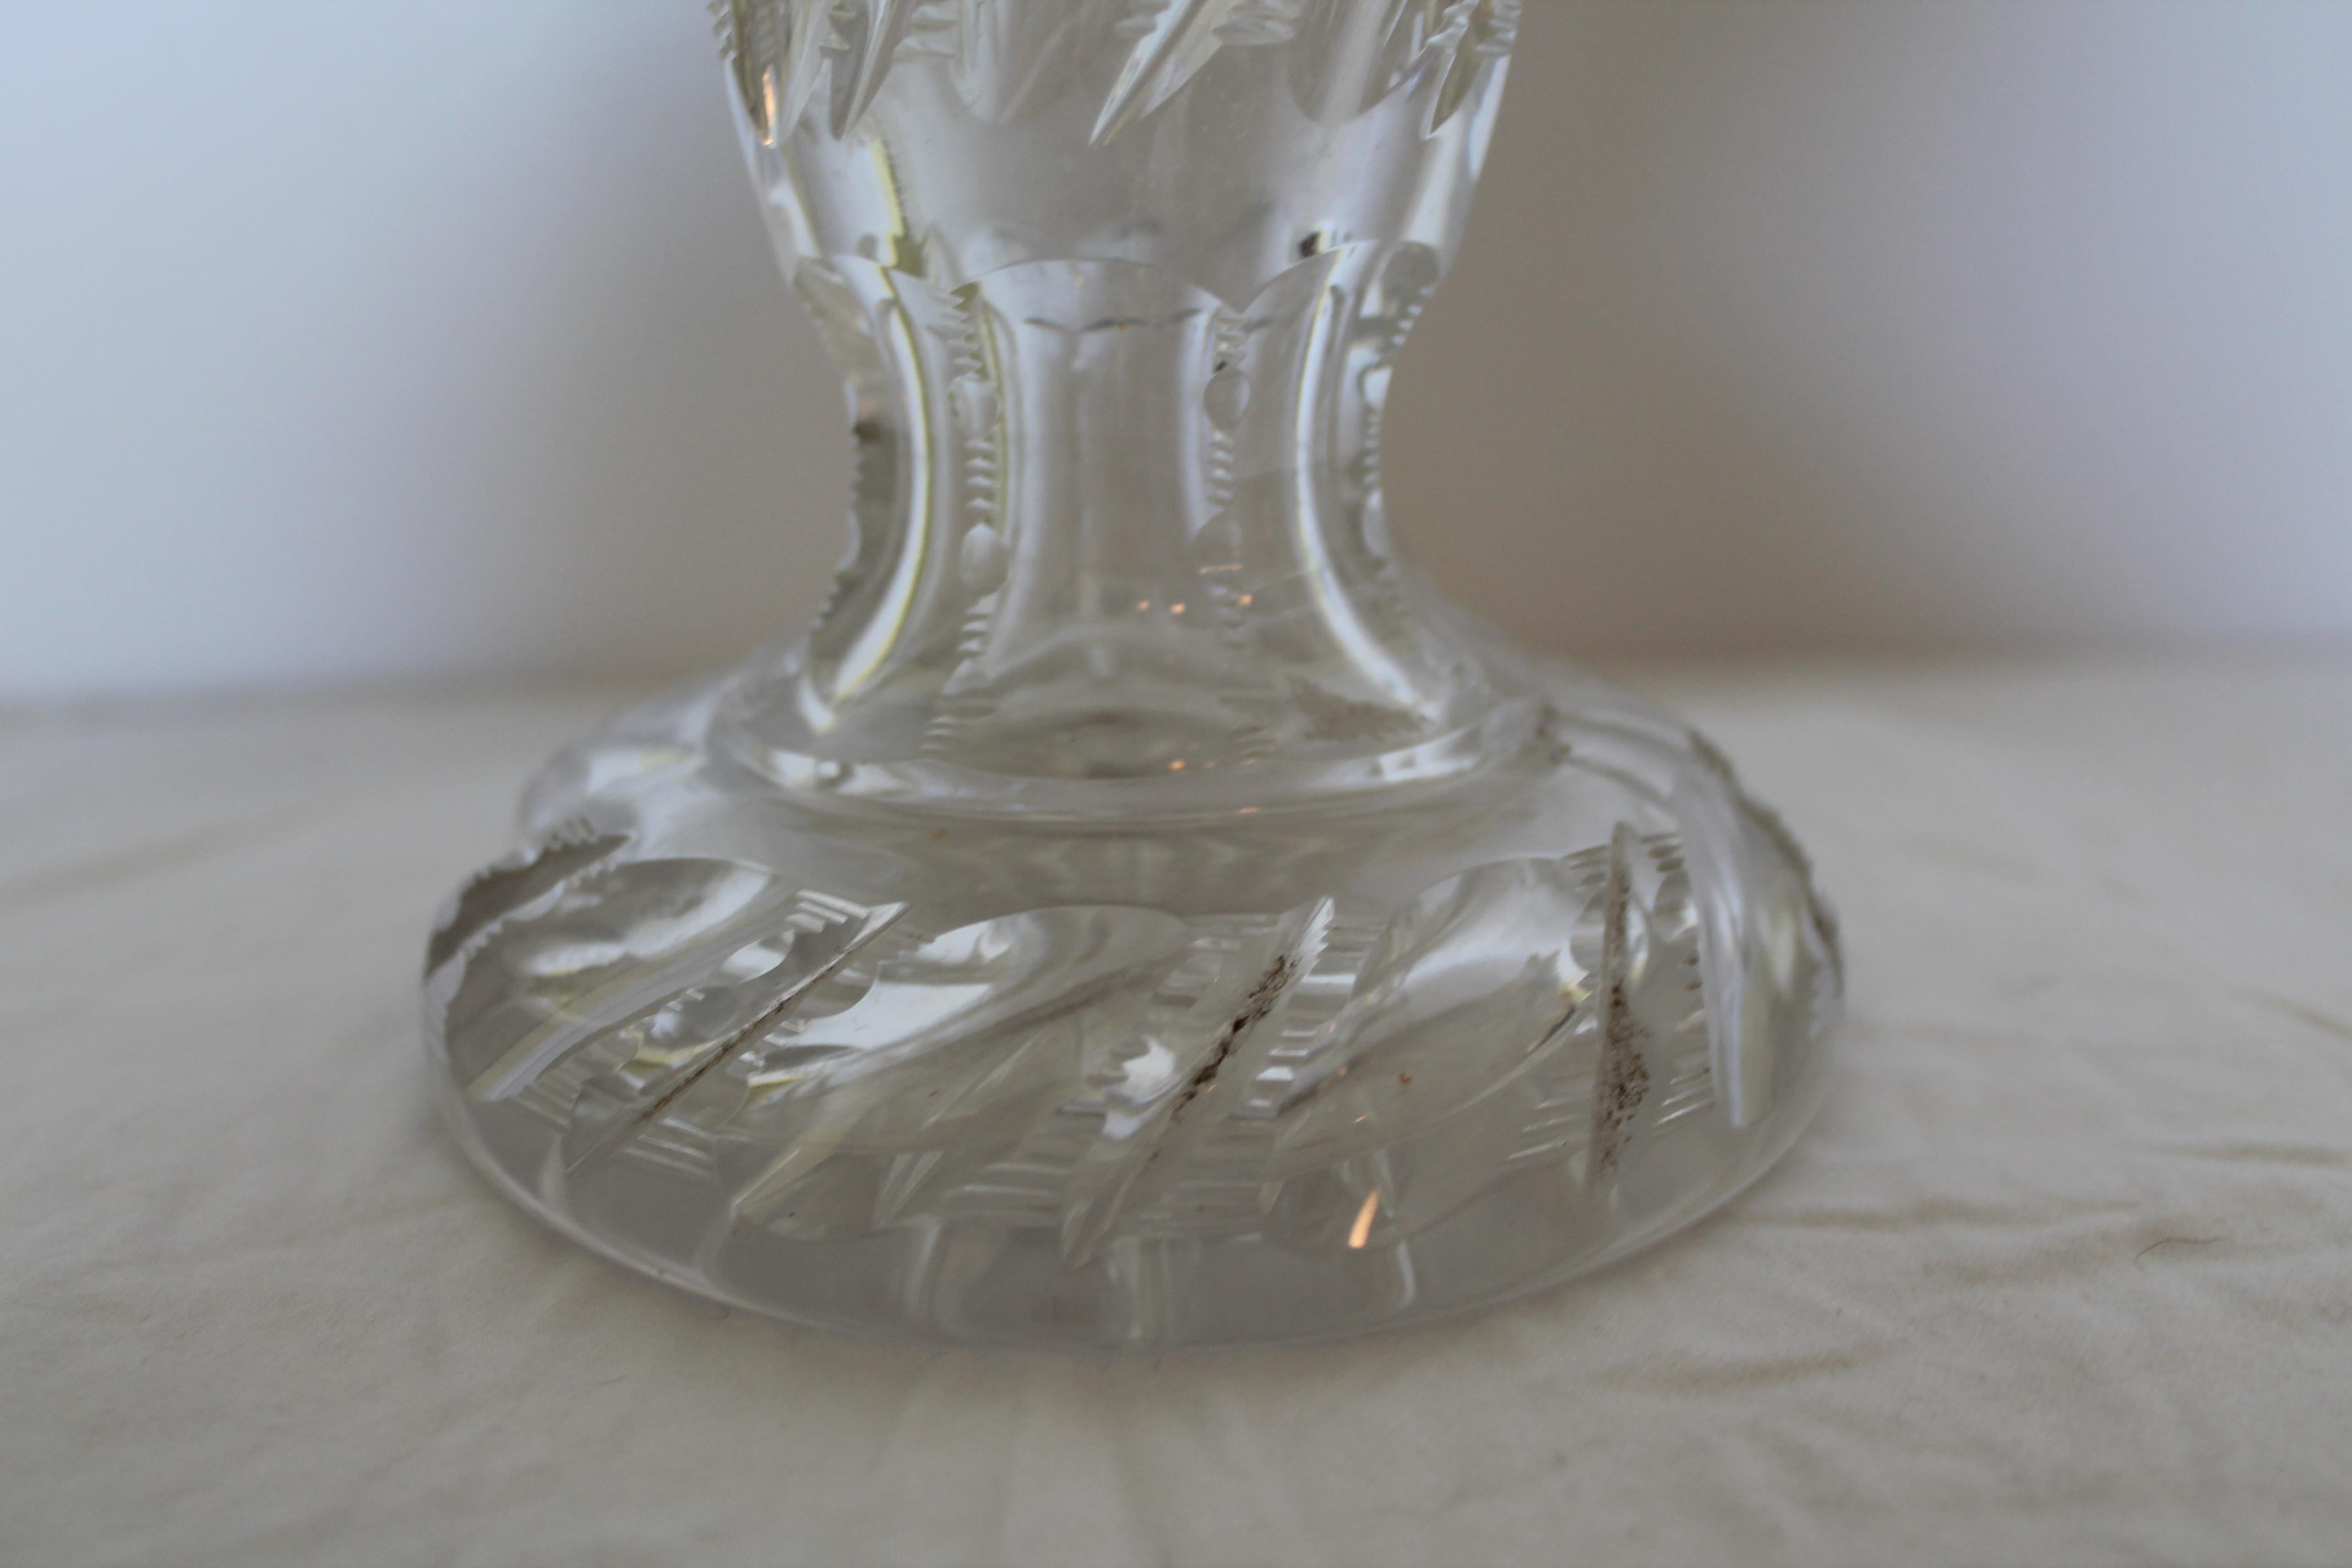 Chef-d'œuvre de lampe de table en verre taillé britannique du XIXe siècle par F & C Osler. Cette lampe est d'une qualité exceptionnelle, Osler ayant fait appel aux meilleurs artisans. Acheté en Hollande auprès d'un revendeur de luminaires. Les 2